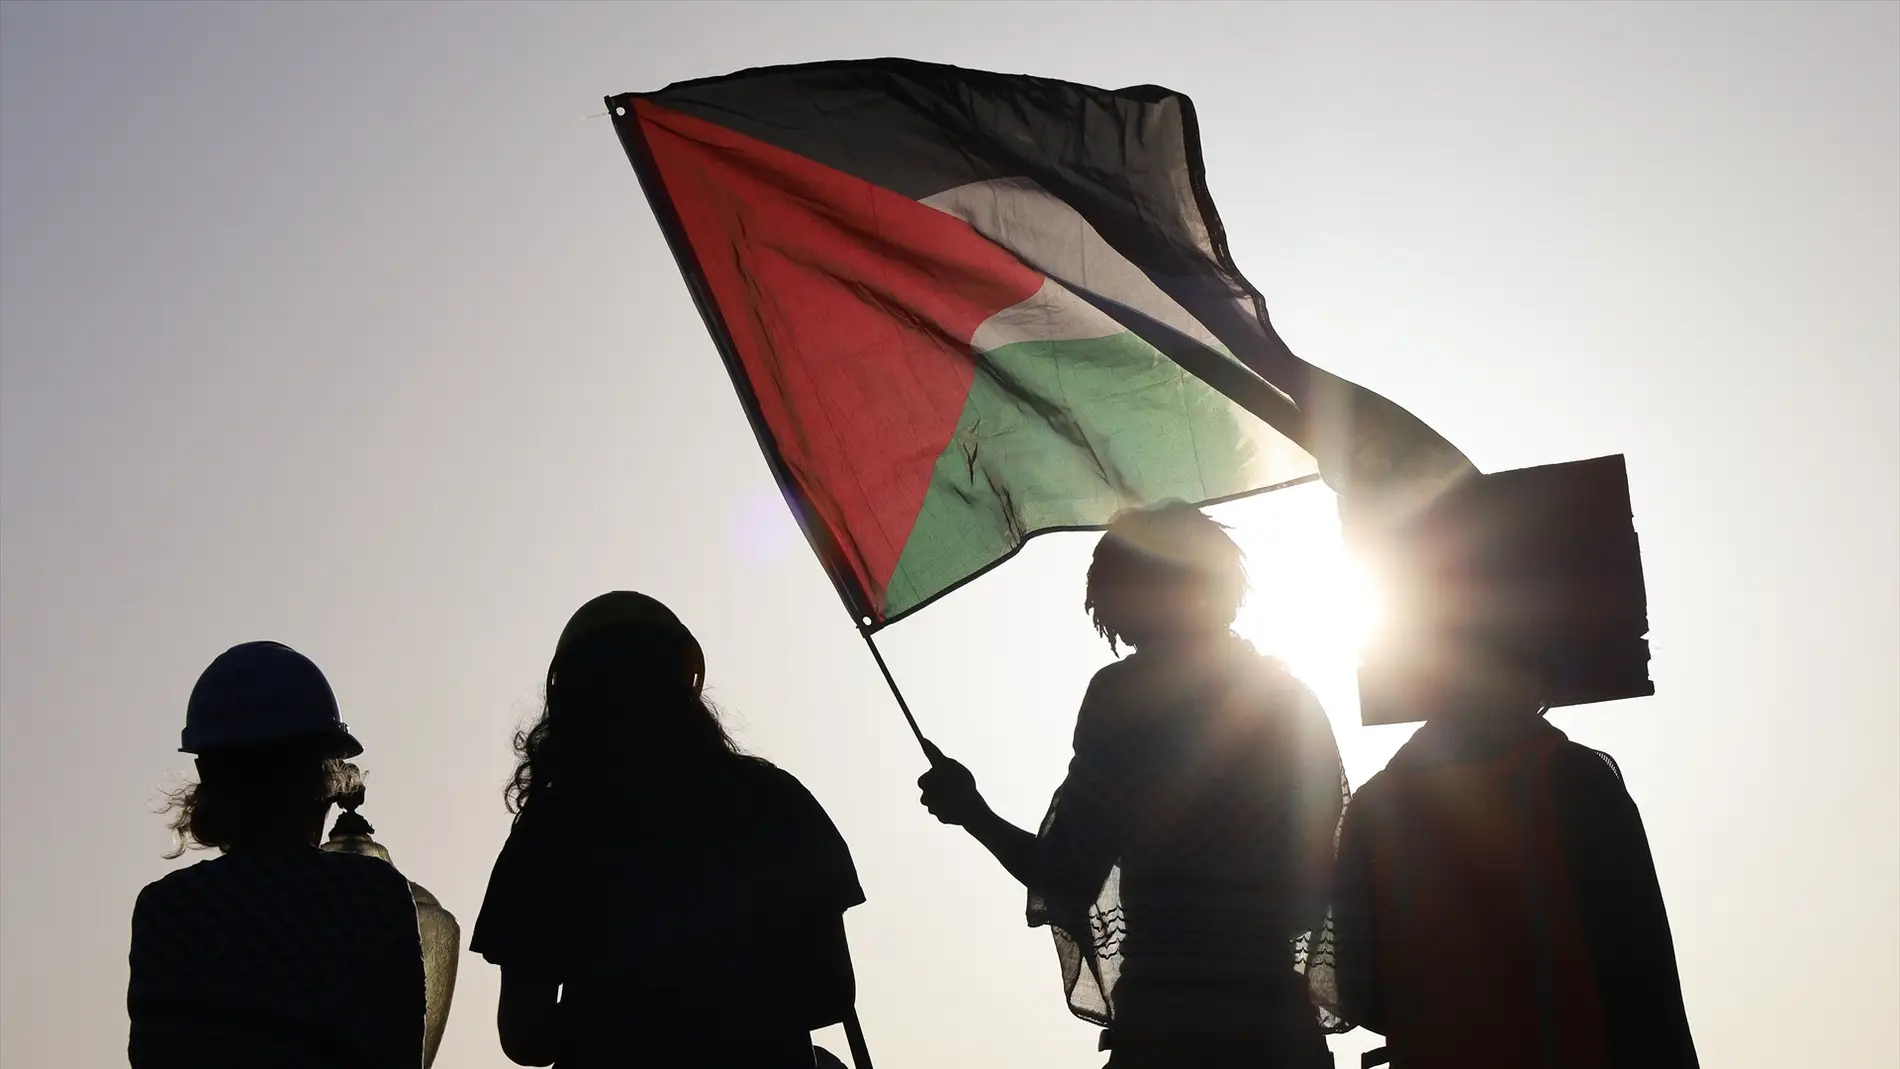 Rafat valora positivamente que España reconozca el Estado de Palestina